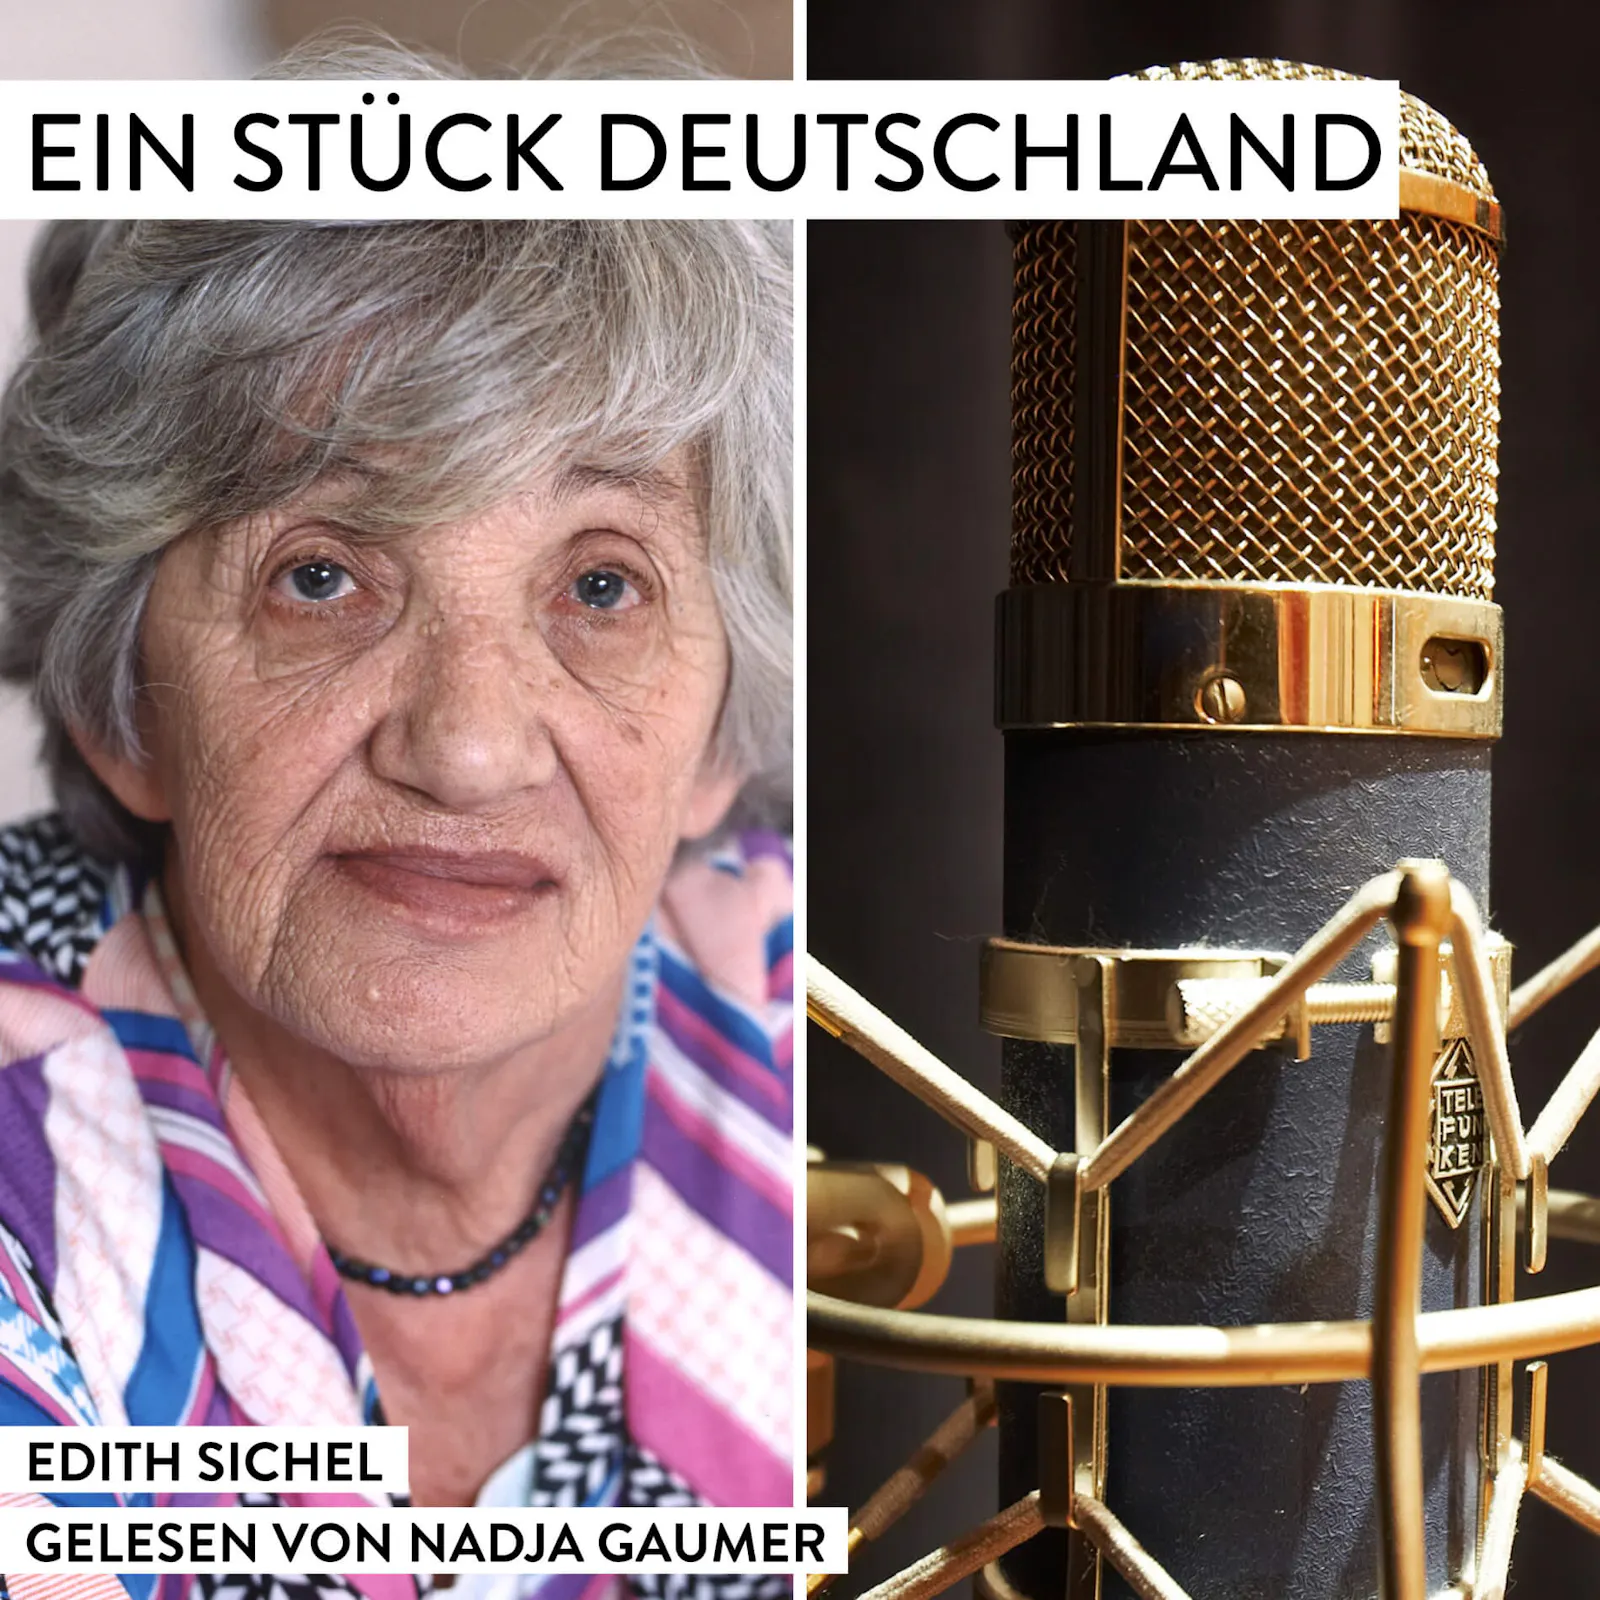 Hier seht ihr das Titelbild für die nächste EIN STÜCK DEUTSCHLAND Podcast-Folge über Edith Sichel. Es ist eine vorgelesene Folge. Sprecherin: Nadja Gaumer. Sie ist auf dem Titel nicht zu sehen, weil sie kein Foto von sich im Internet veröffentlicht sehen möchte.